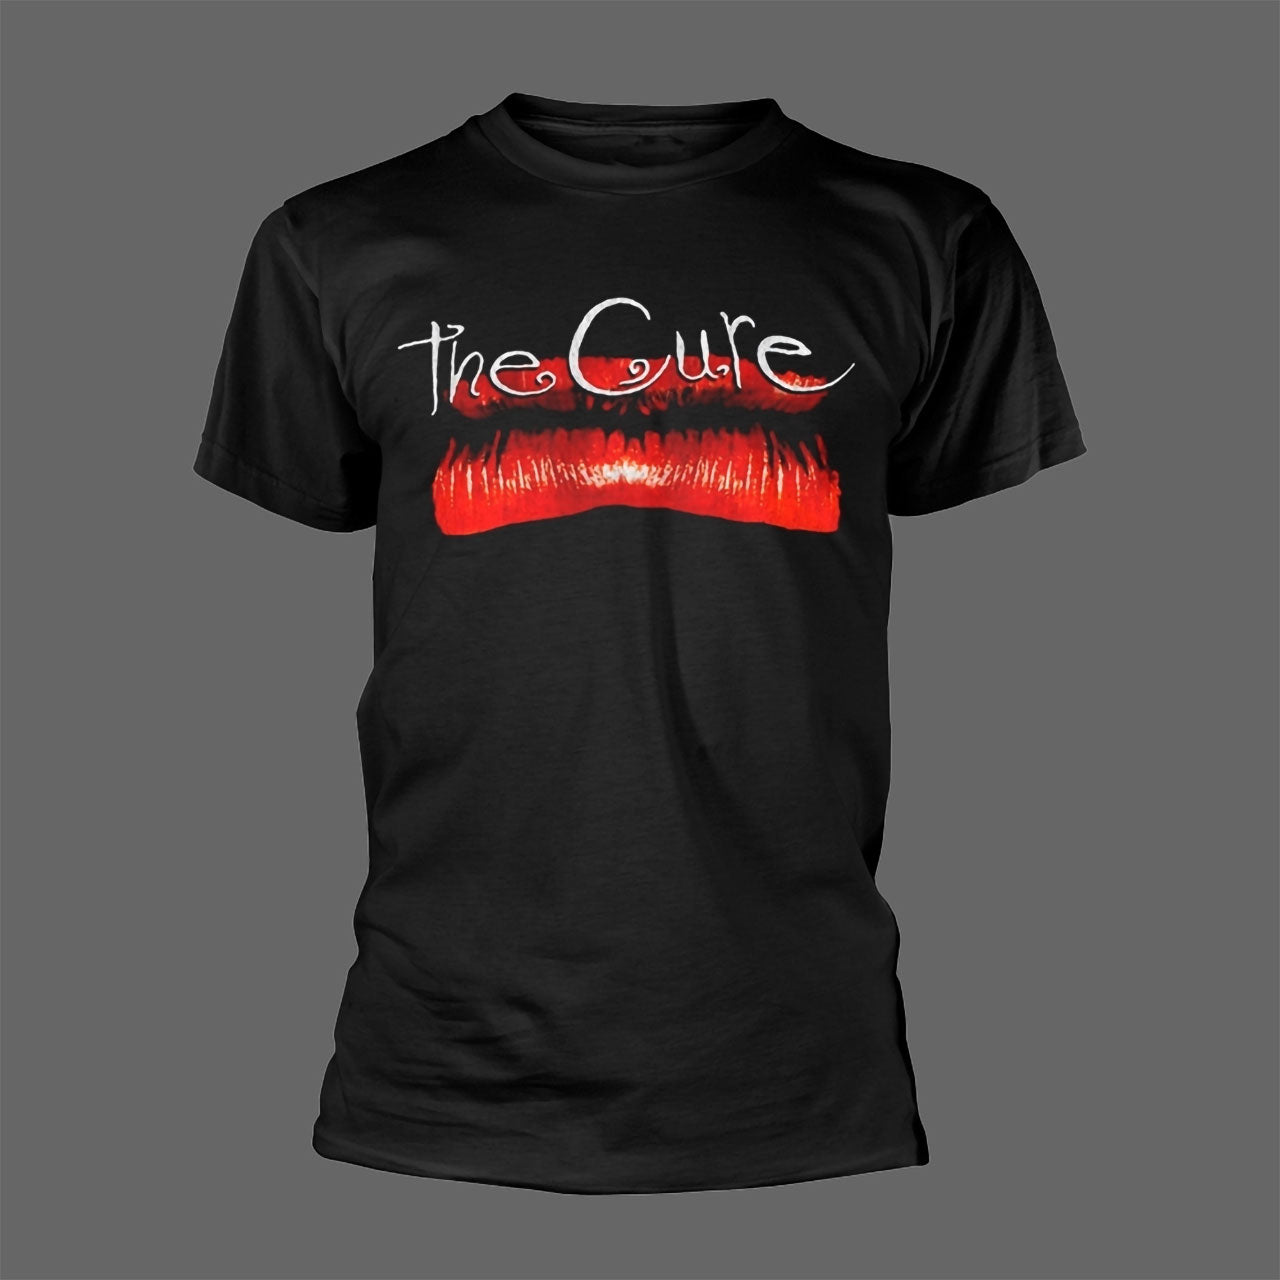 The Cure - Kiss Me, Kiss Me, Kiss Me (T-Shirt)